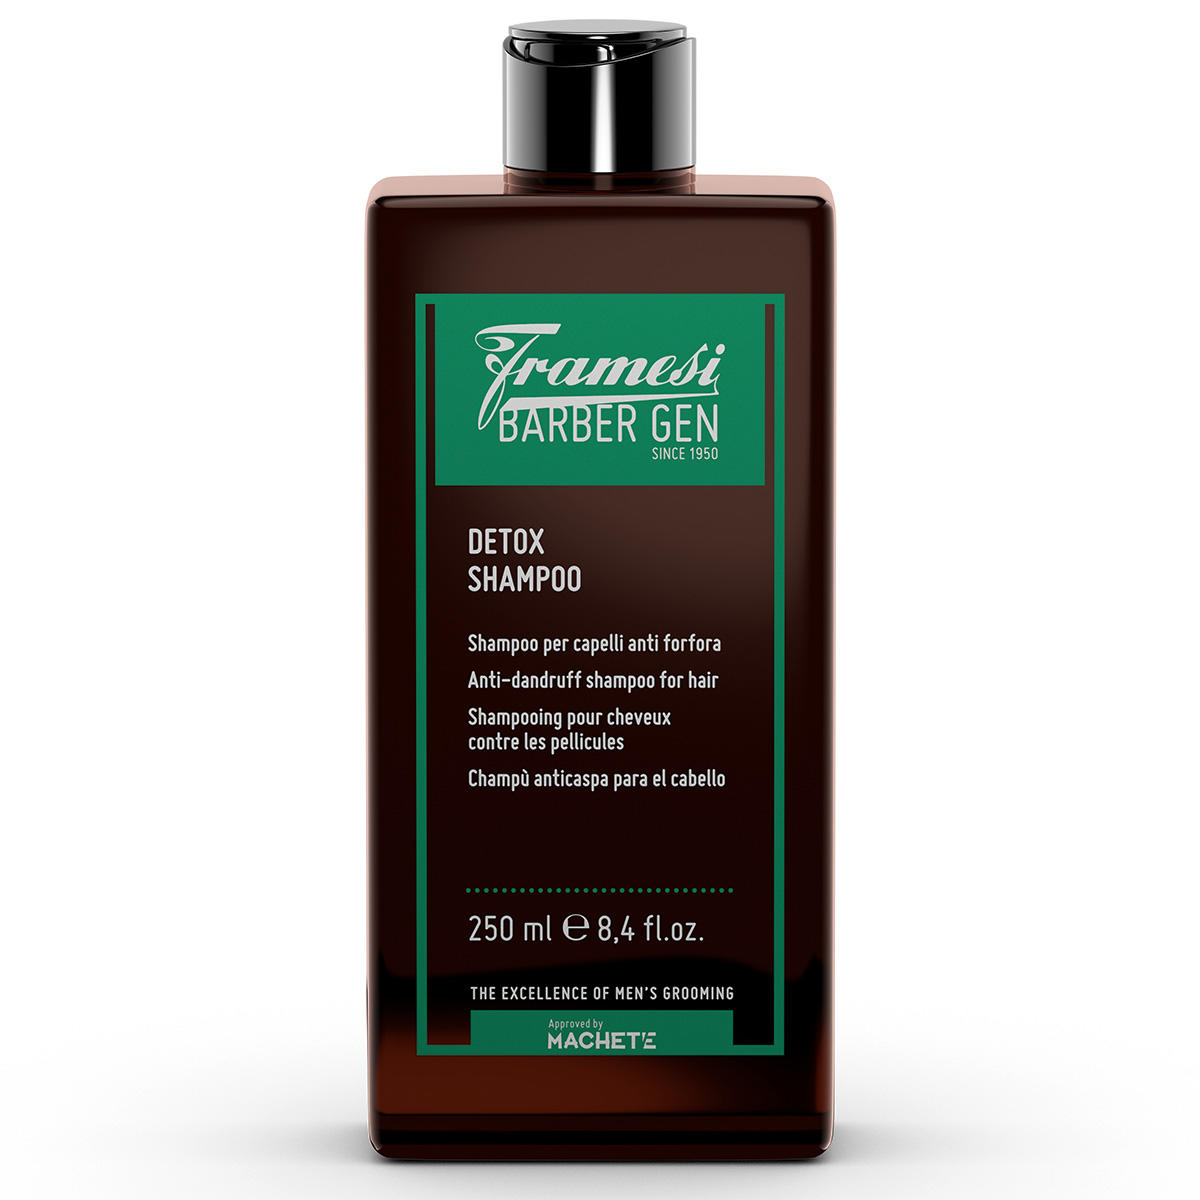 framesi BARBER GEN Detox Shampoo 250 ml - 1